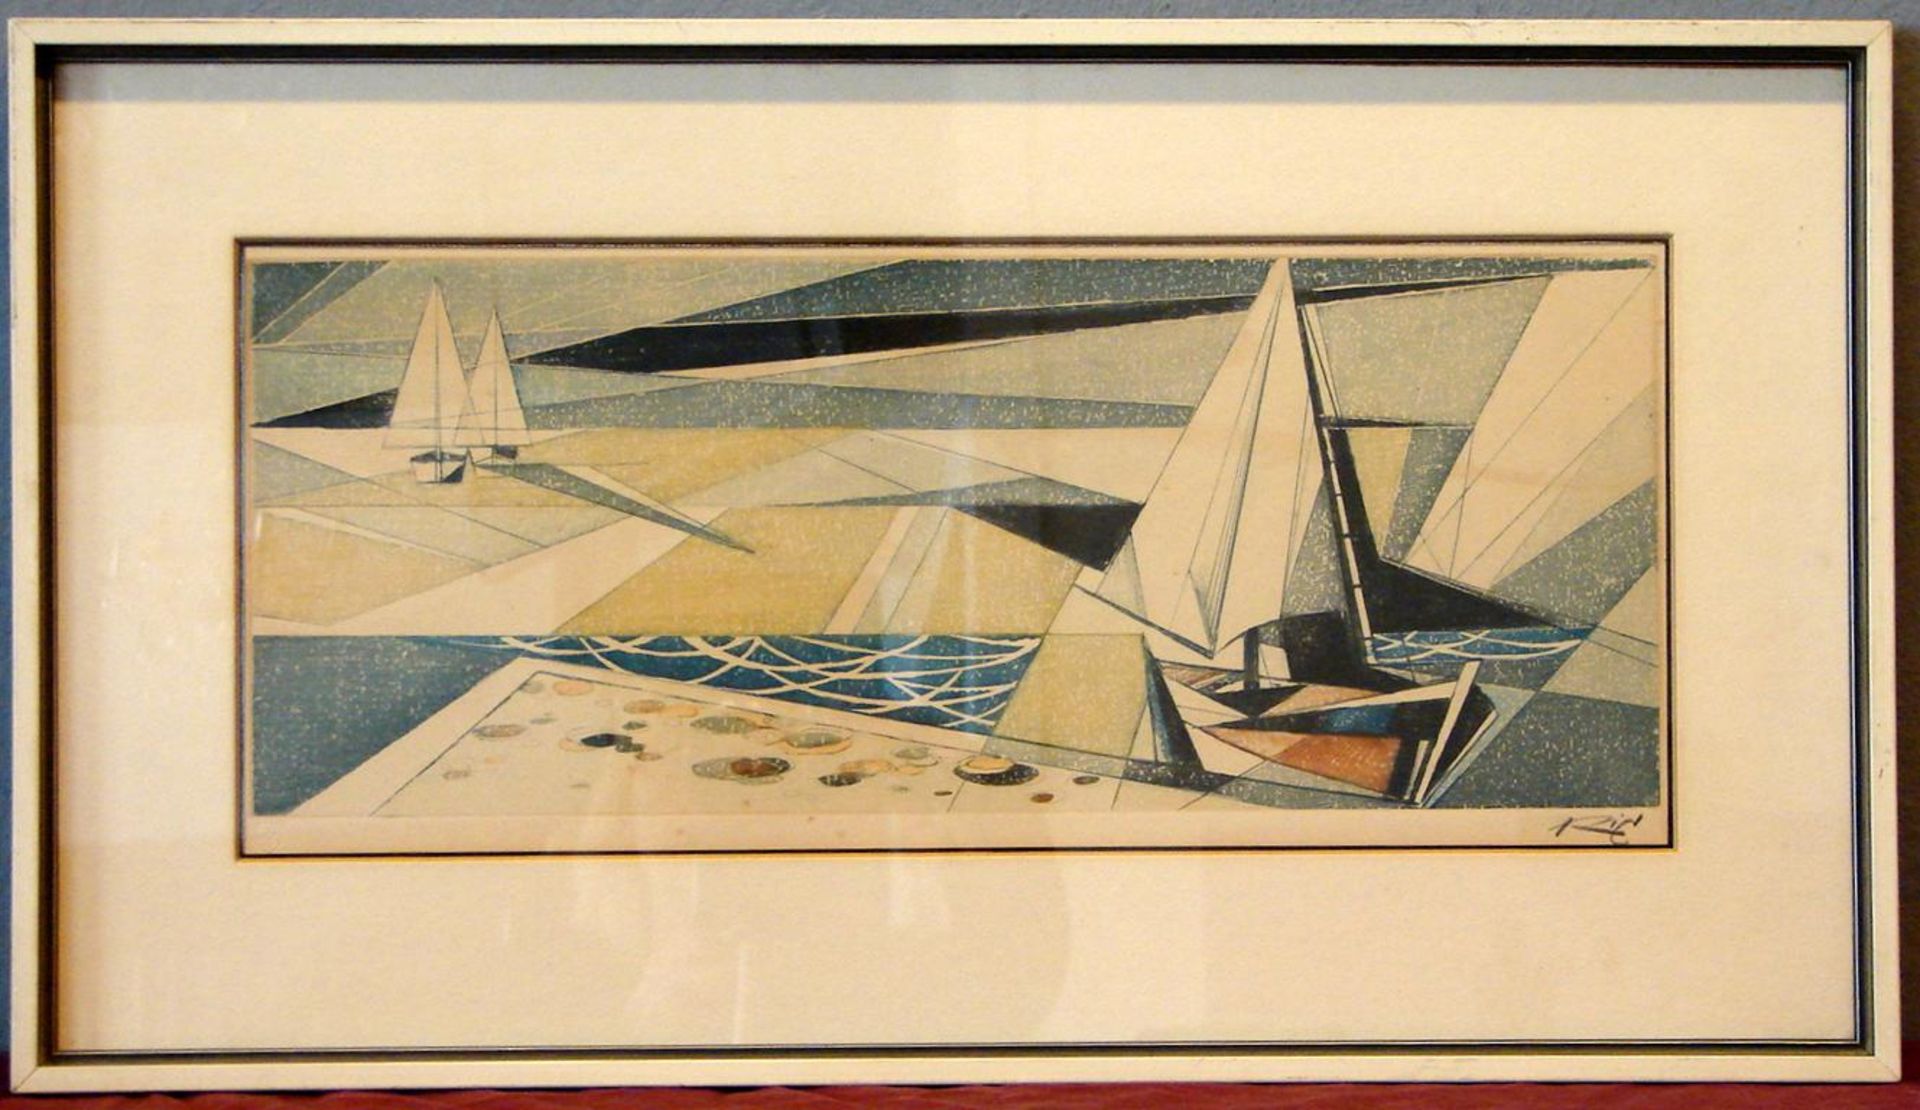 RICHARD BERGER, "Segelboote", Radierung, 60er Jahre, u.re.sig., ca. 50 x 21 cm- - -22.00 % buyer's